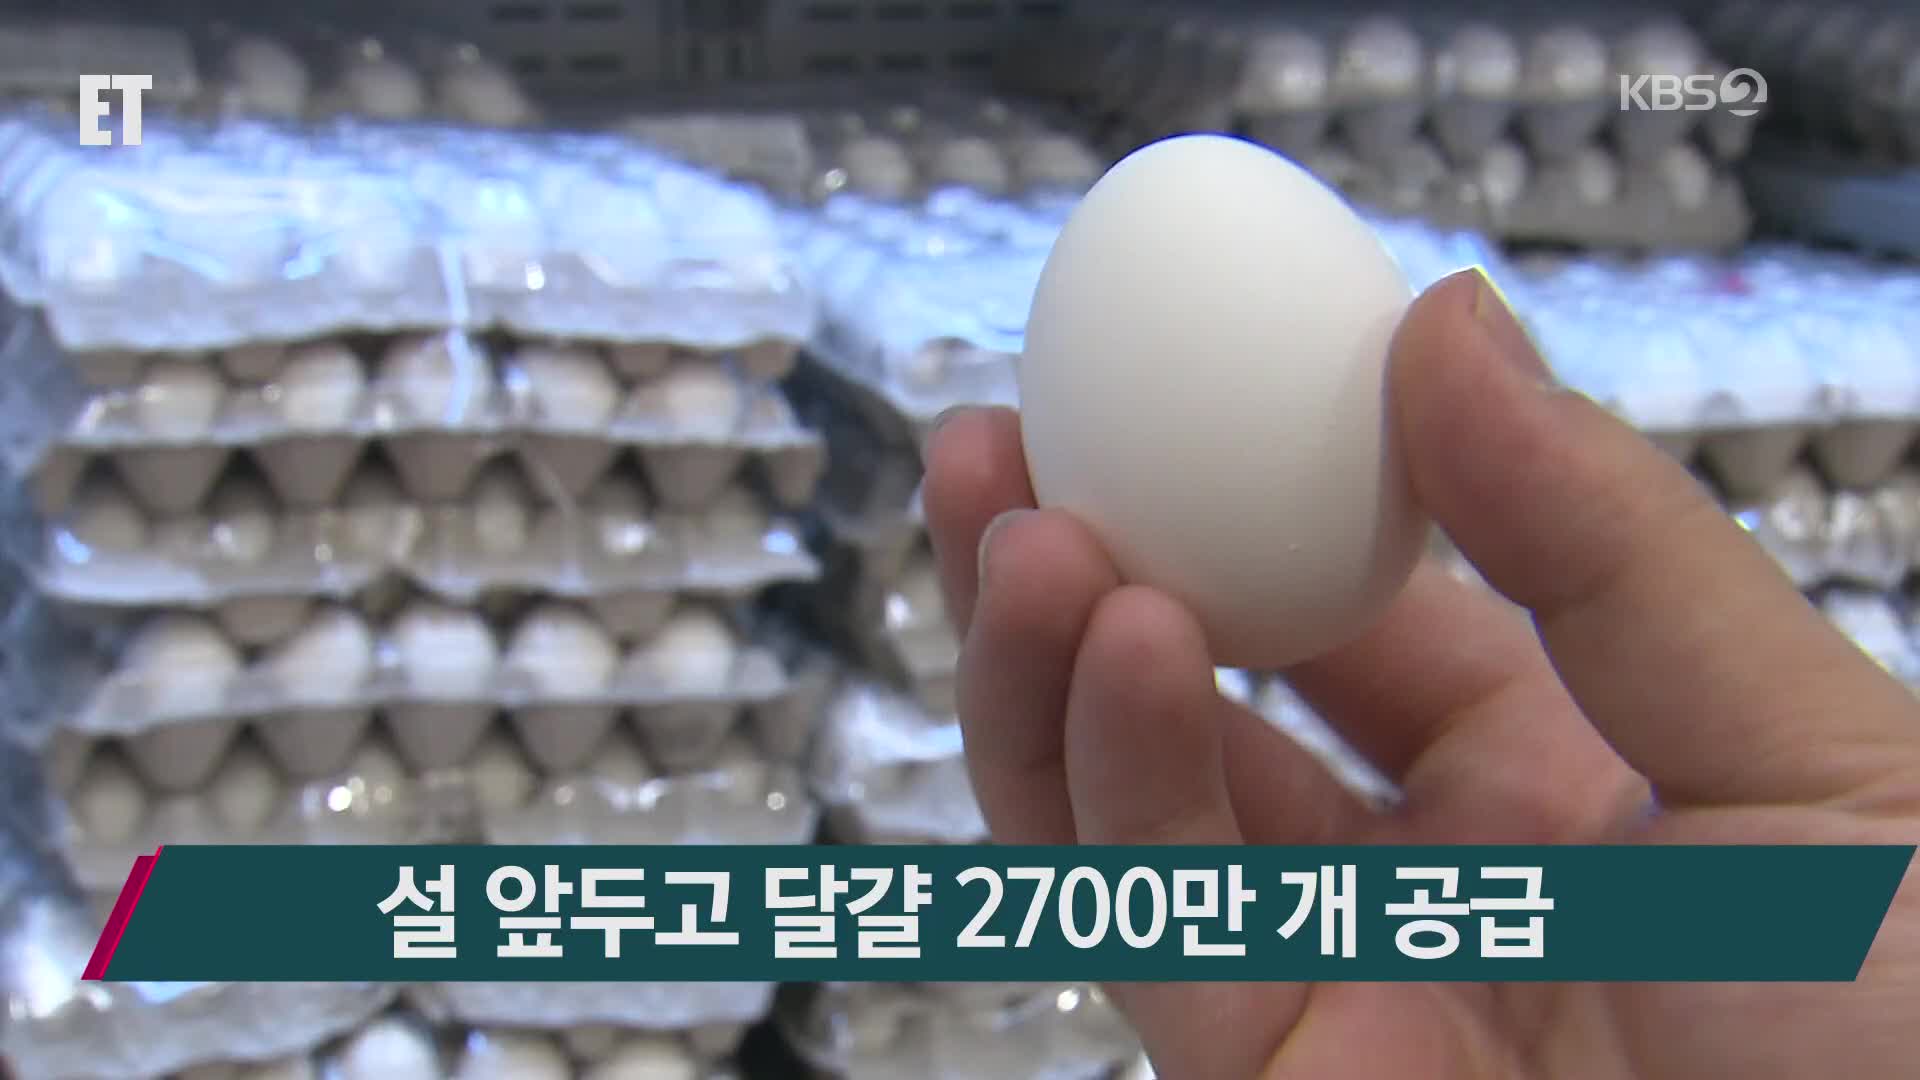 설 앞두고 달걀 2700만 개 공급